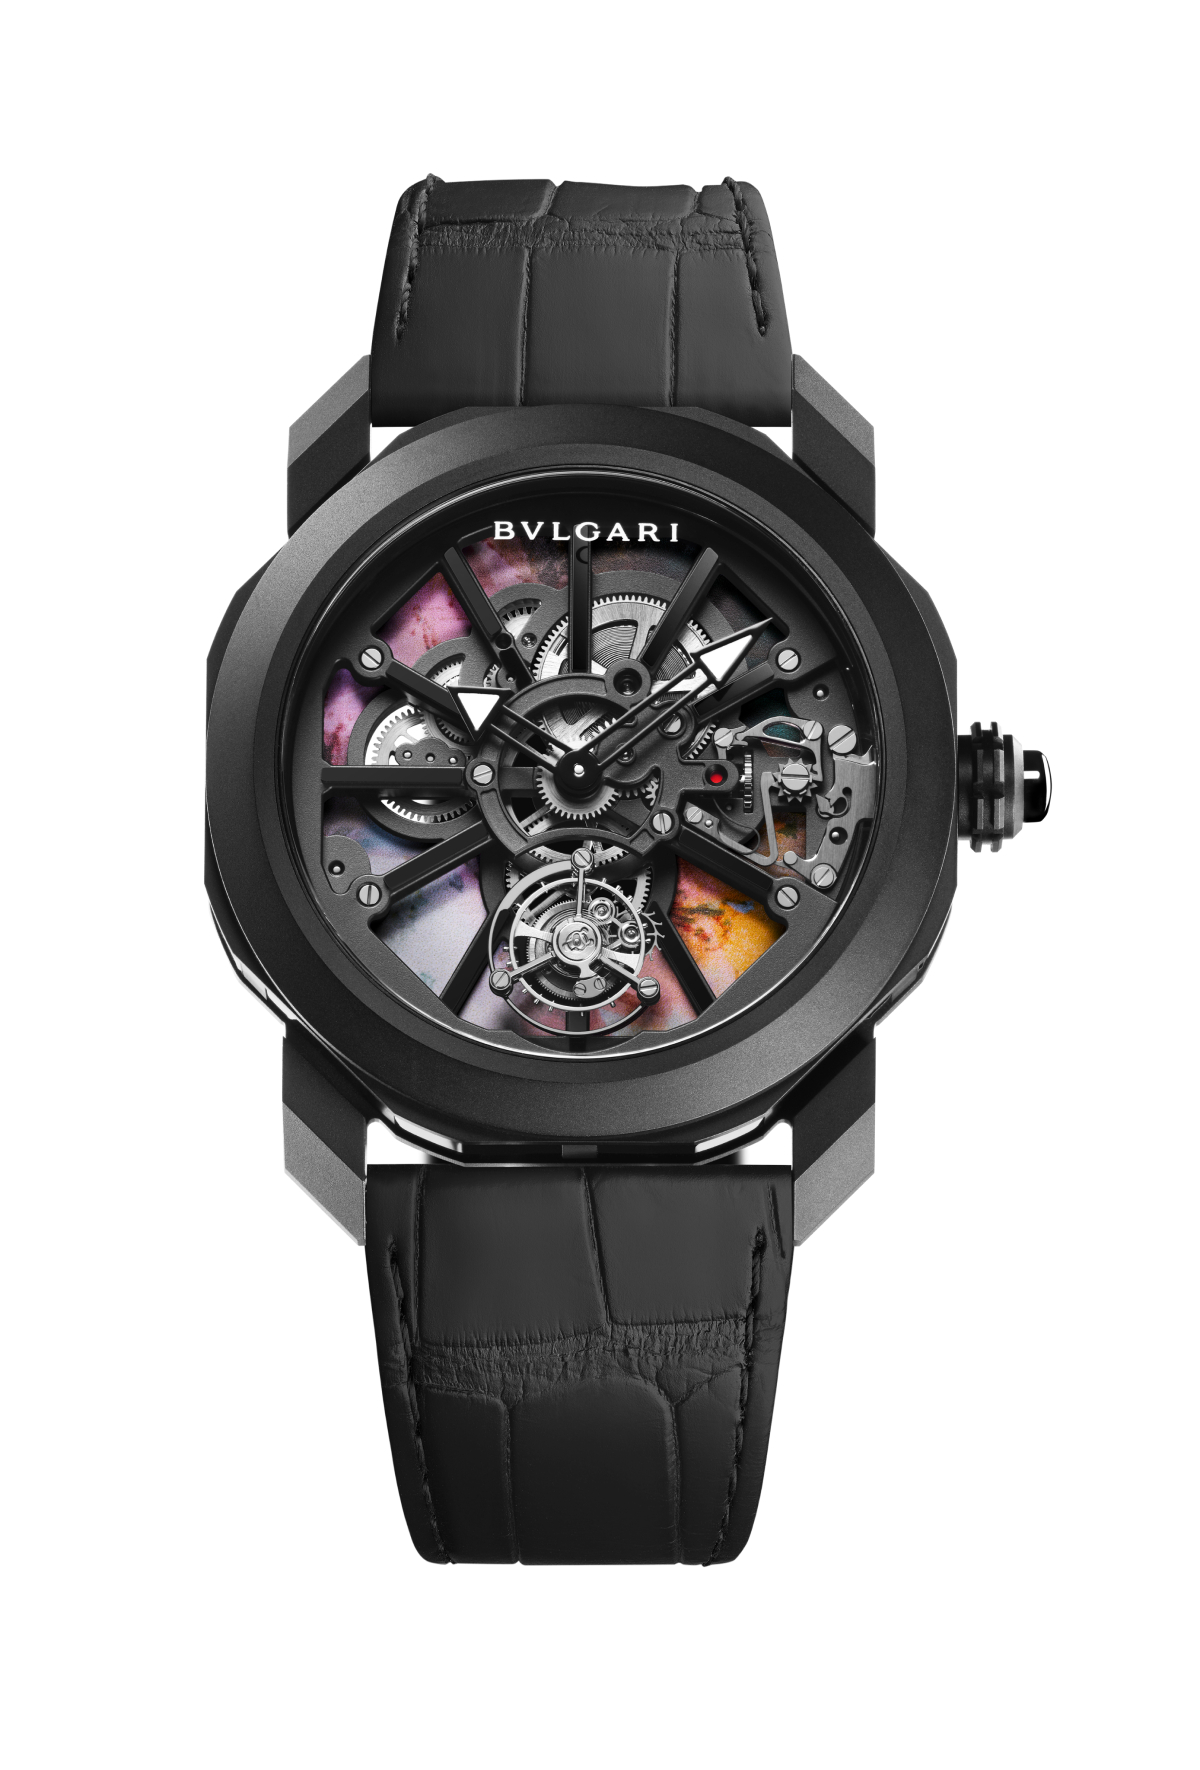 Bvlgari выпустил часы вместе с художником Ван Ян Ченом (фото 5)